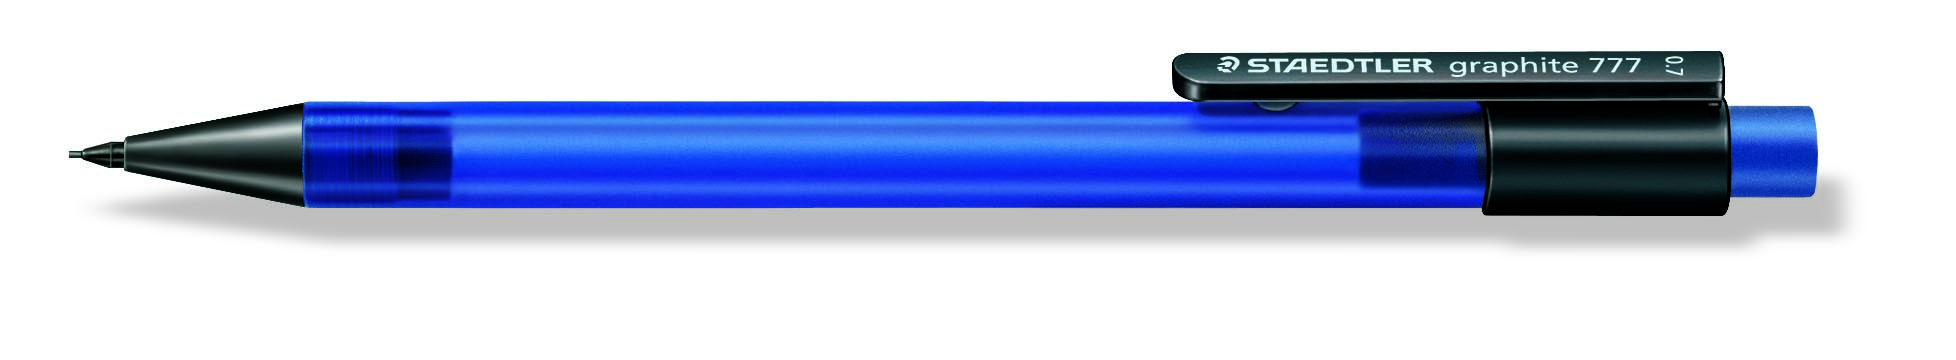 Stiftblyant Graphite 777 0,7mm bl, Staedtler, 10stk